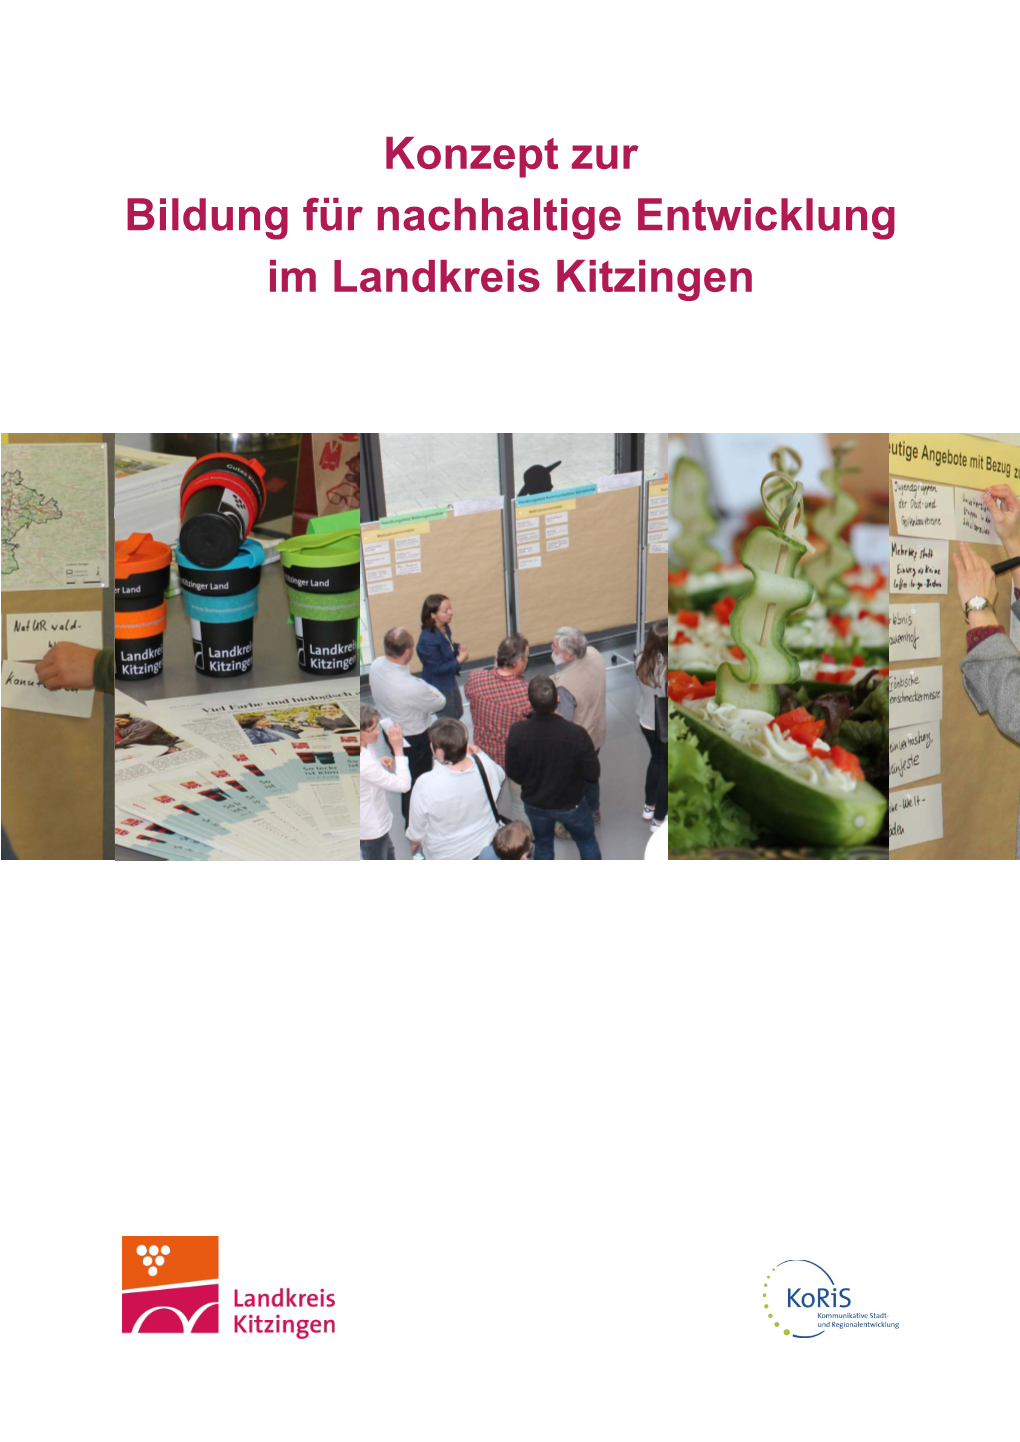 Konzept Zur Bildung Für Nachhaltige Entwicklung Im Landkreis Kitzingen